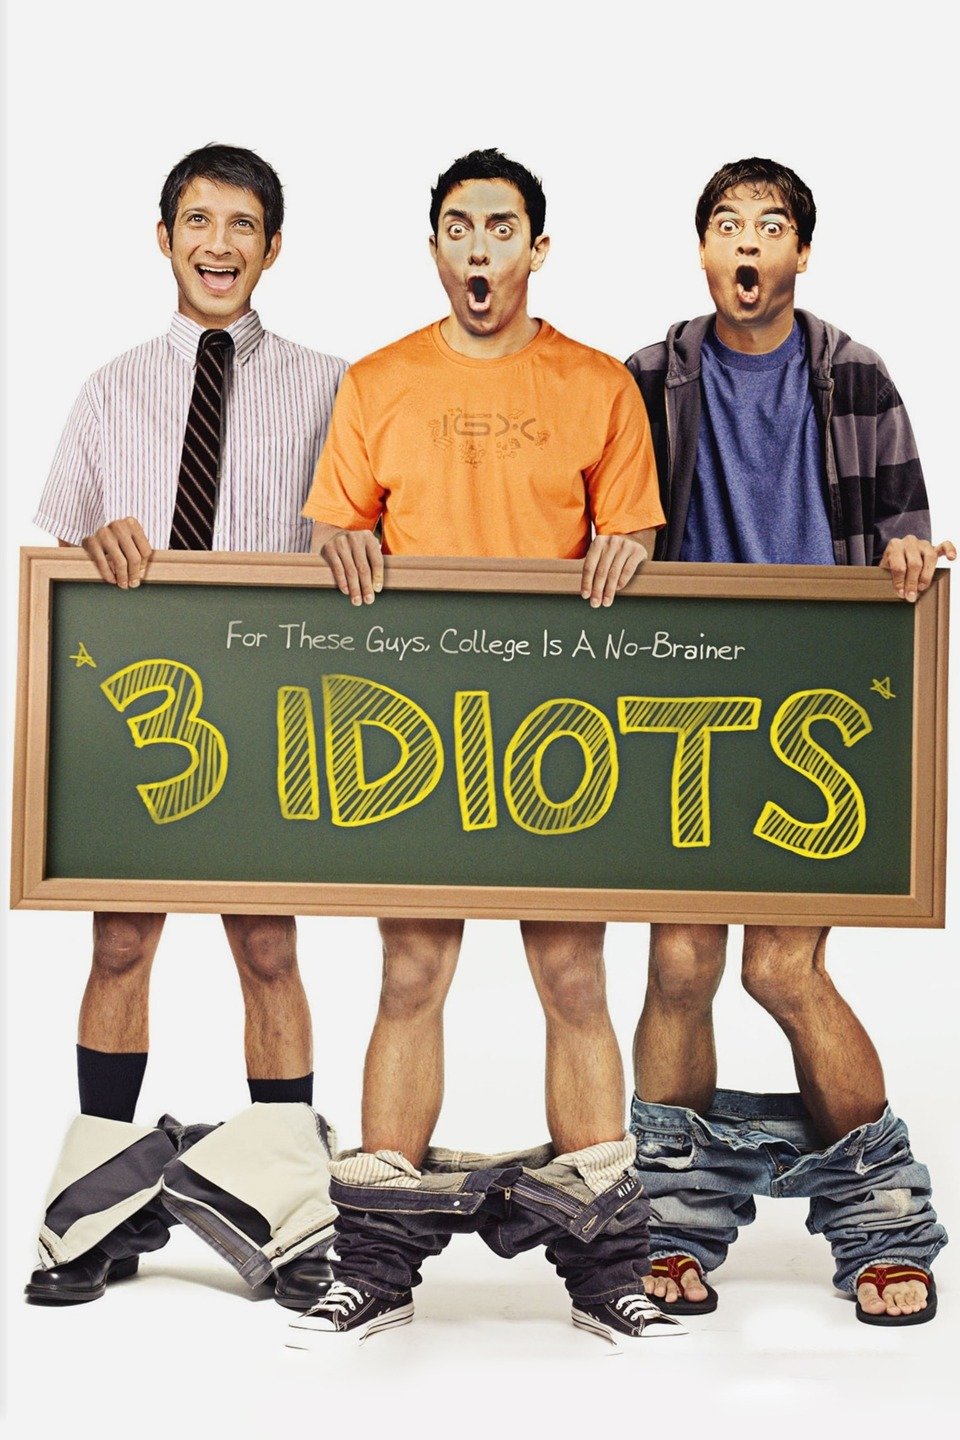 2009 3 Idiots